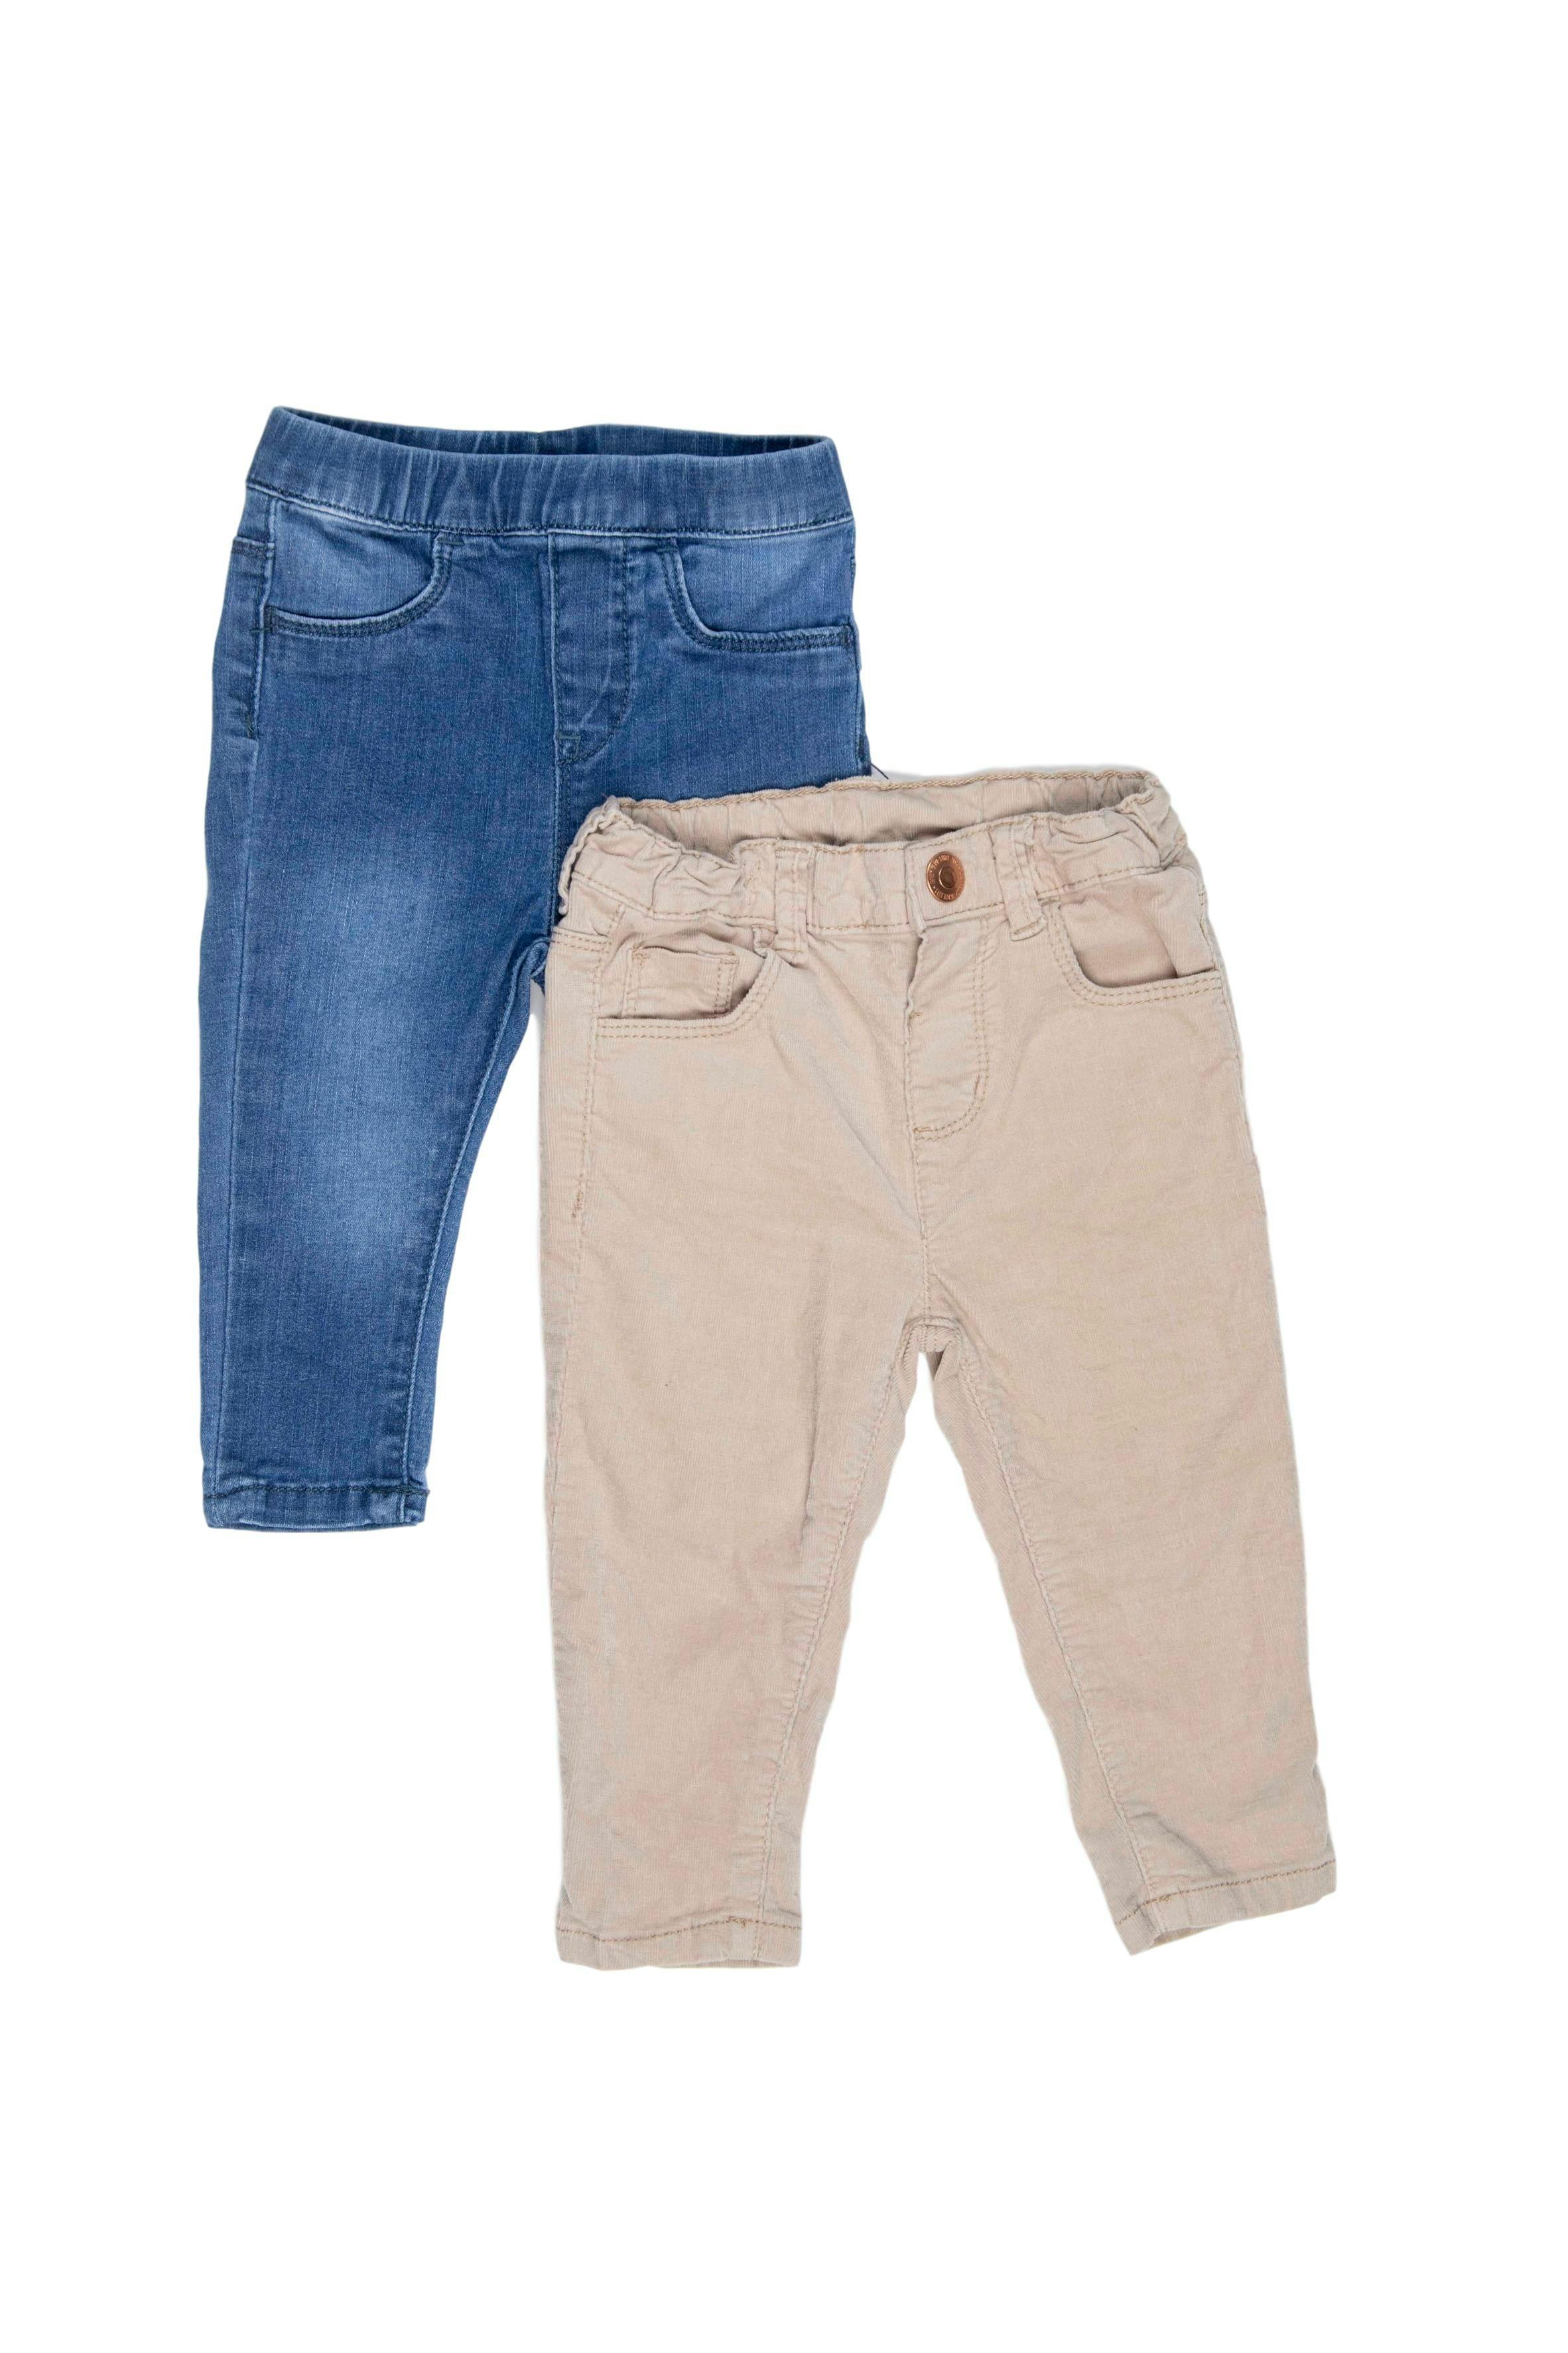 Pack de 2 pantalones, uno de corduroy caqui 98% algodón y otro Jean pitillo 75% algodón - Yamp